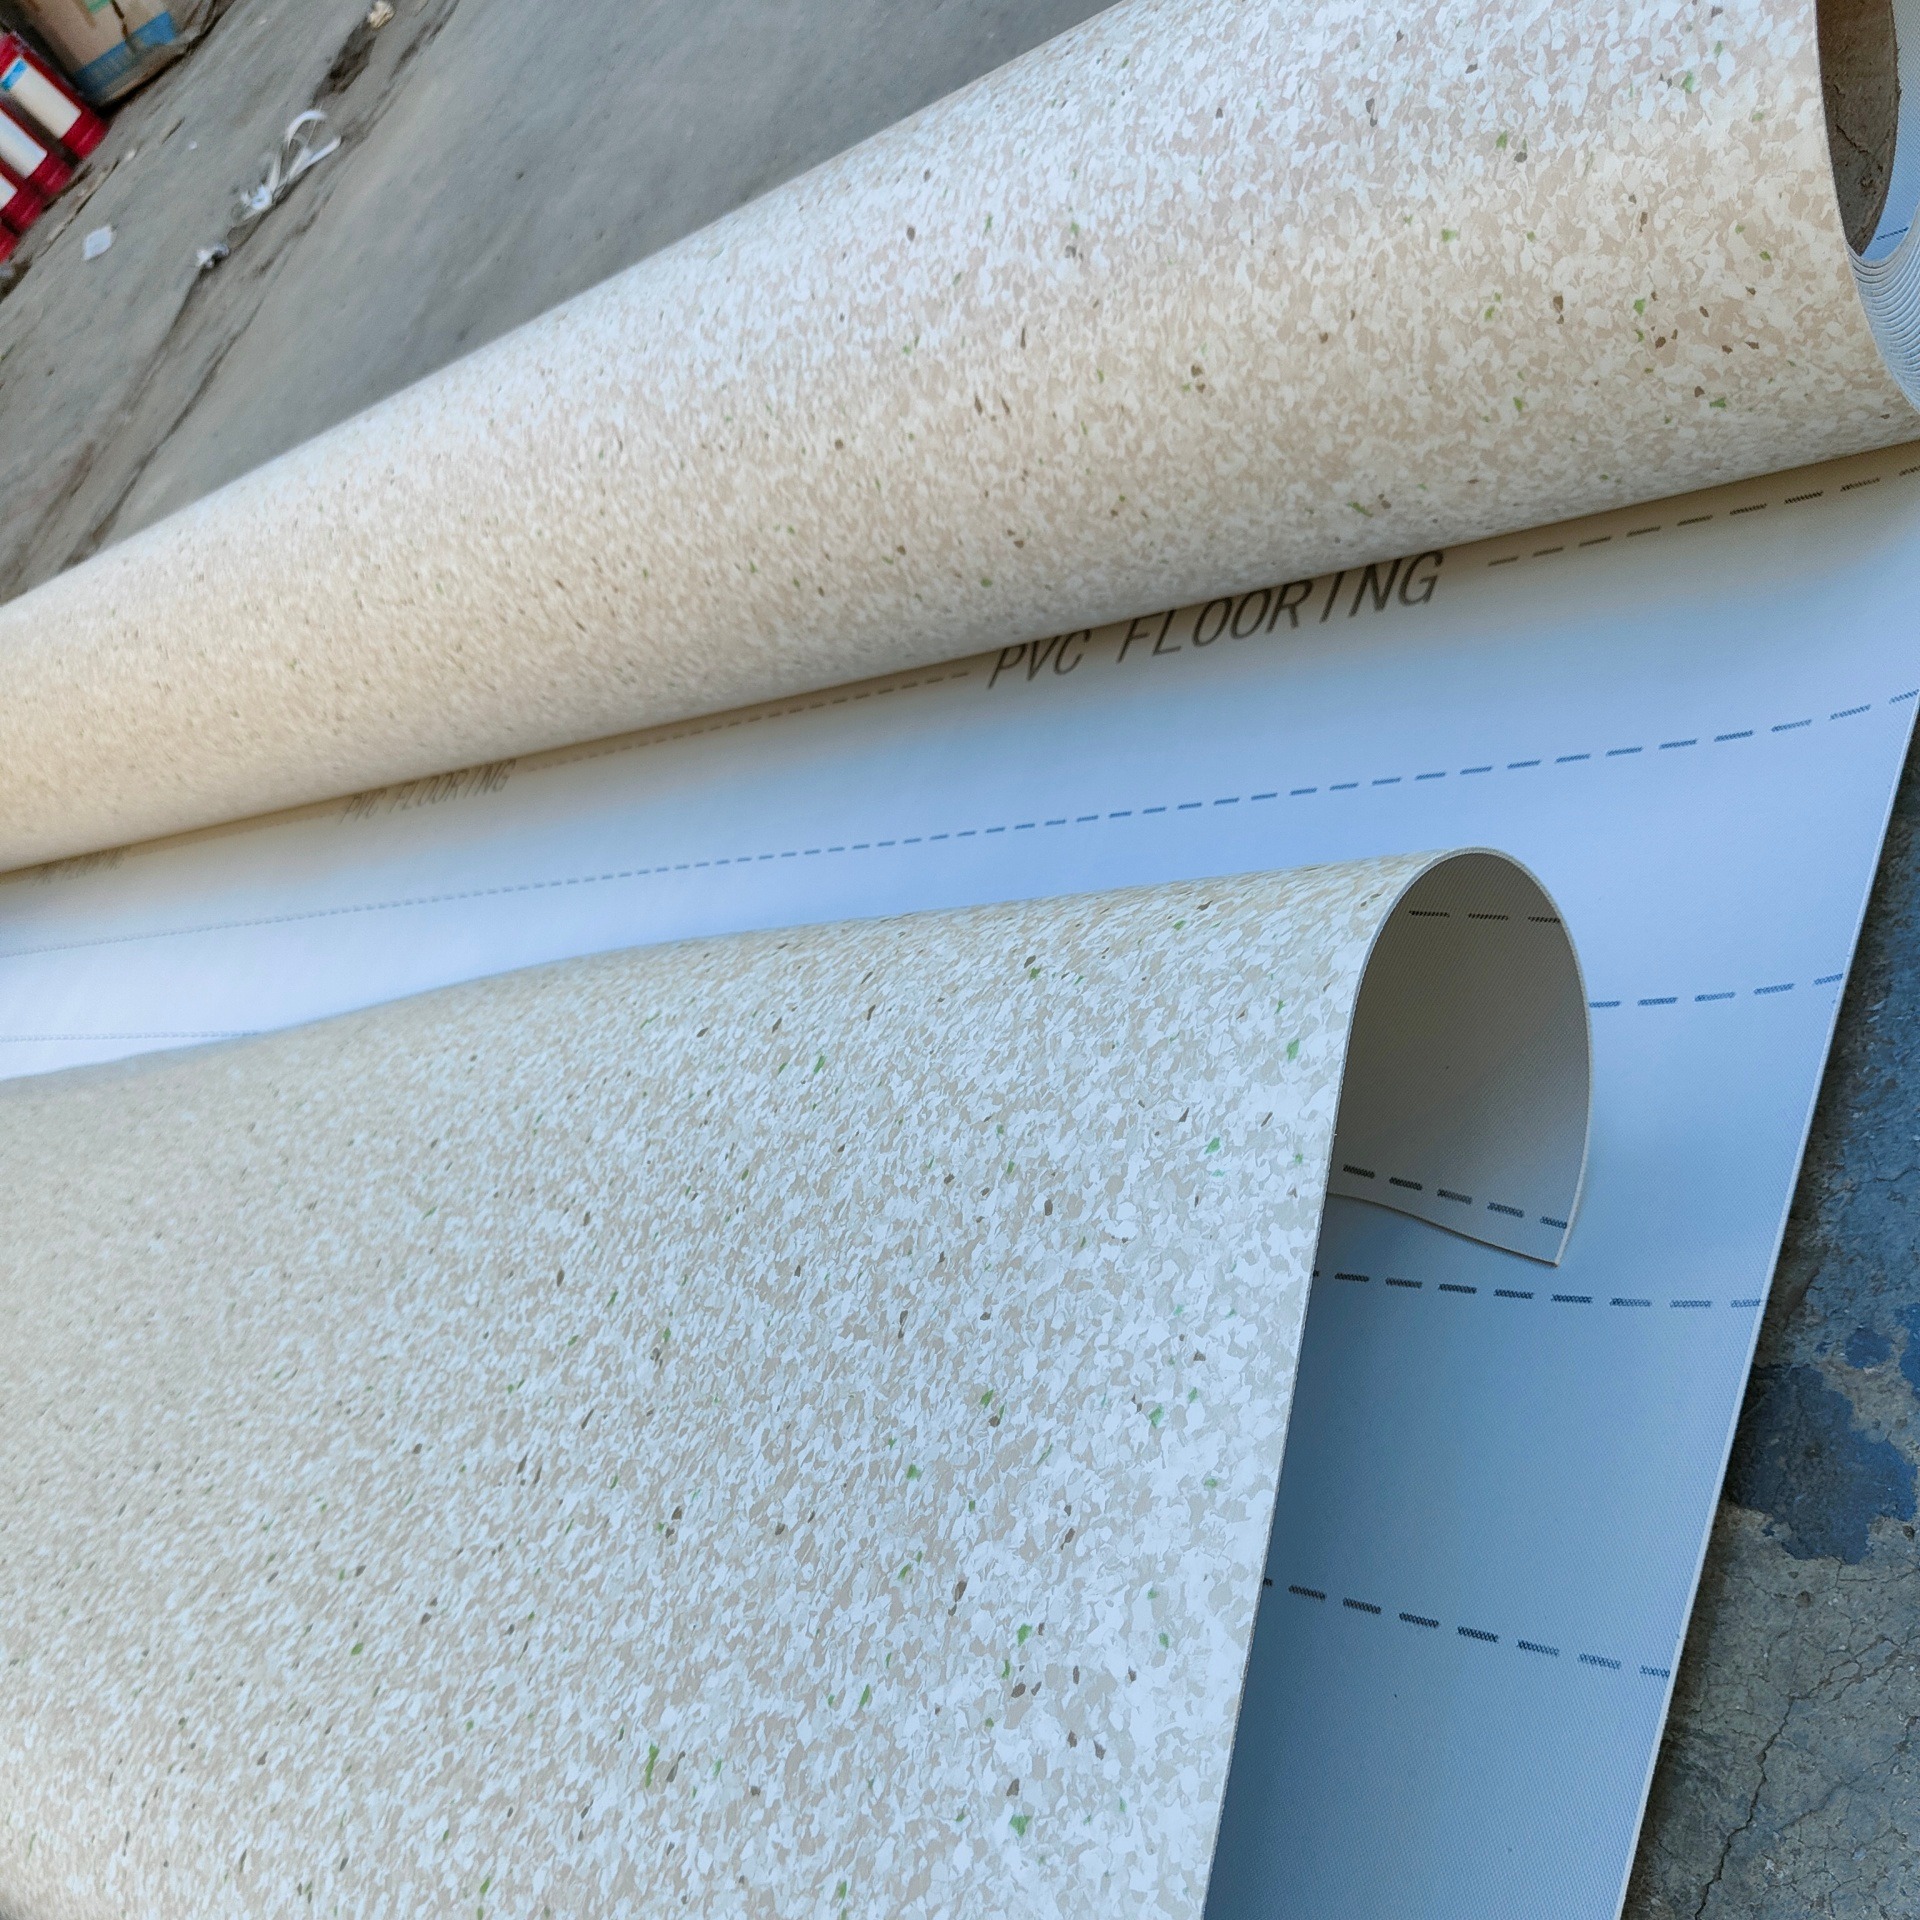 西盟绿色羽毛球场塑胶地板生产厂家 羽毛球塑胶地板的清洁 羽毛球塑胶地板的维修 羽毛球塑胶地板